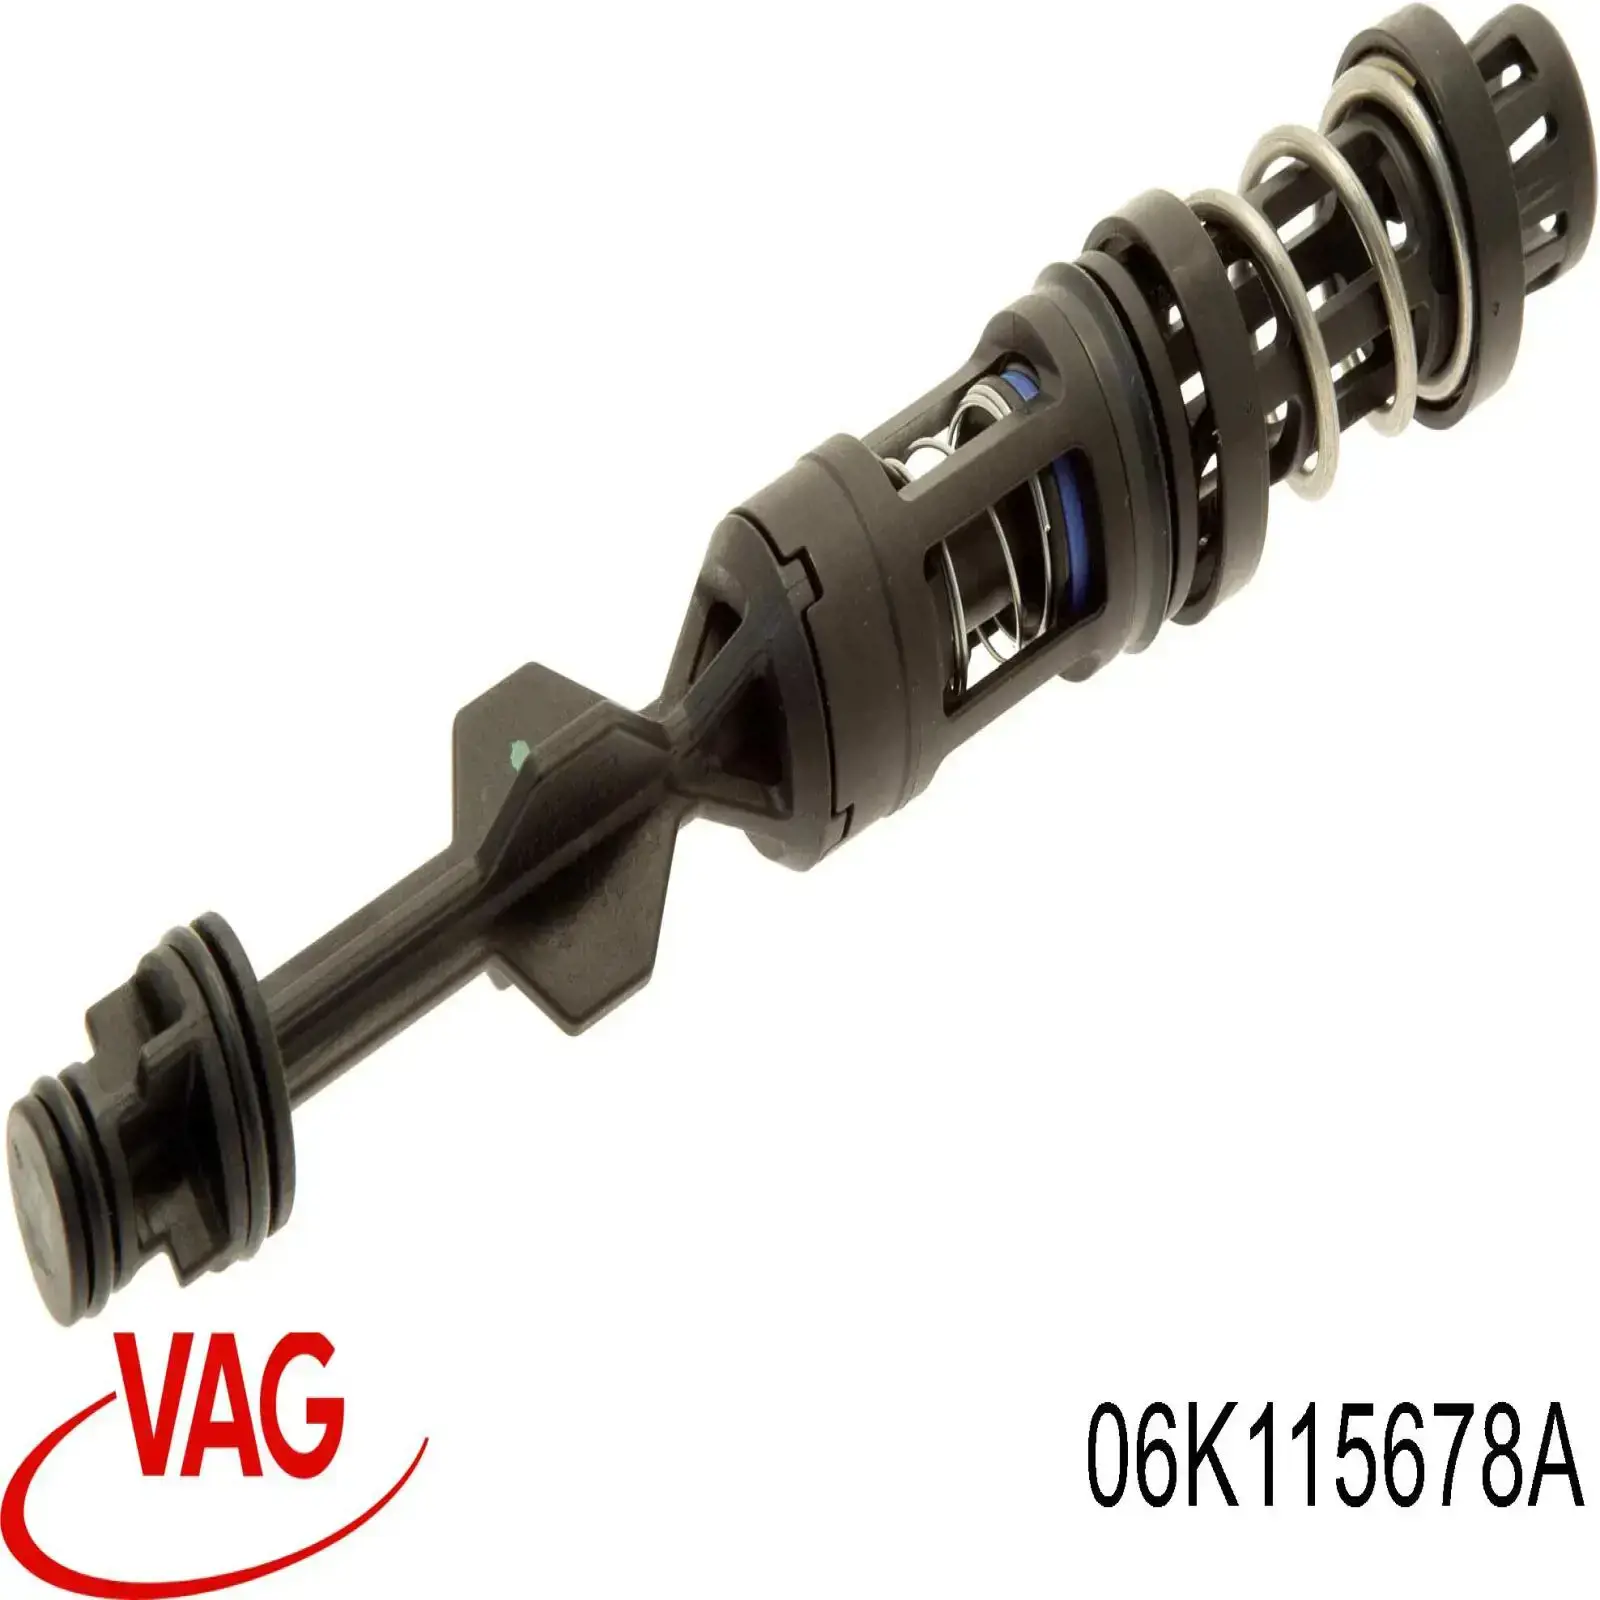 06K115441B VAG varilla de filtro de aceite de el tubo